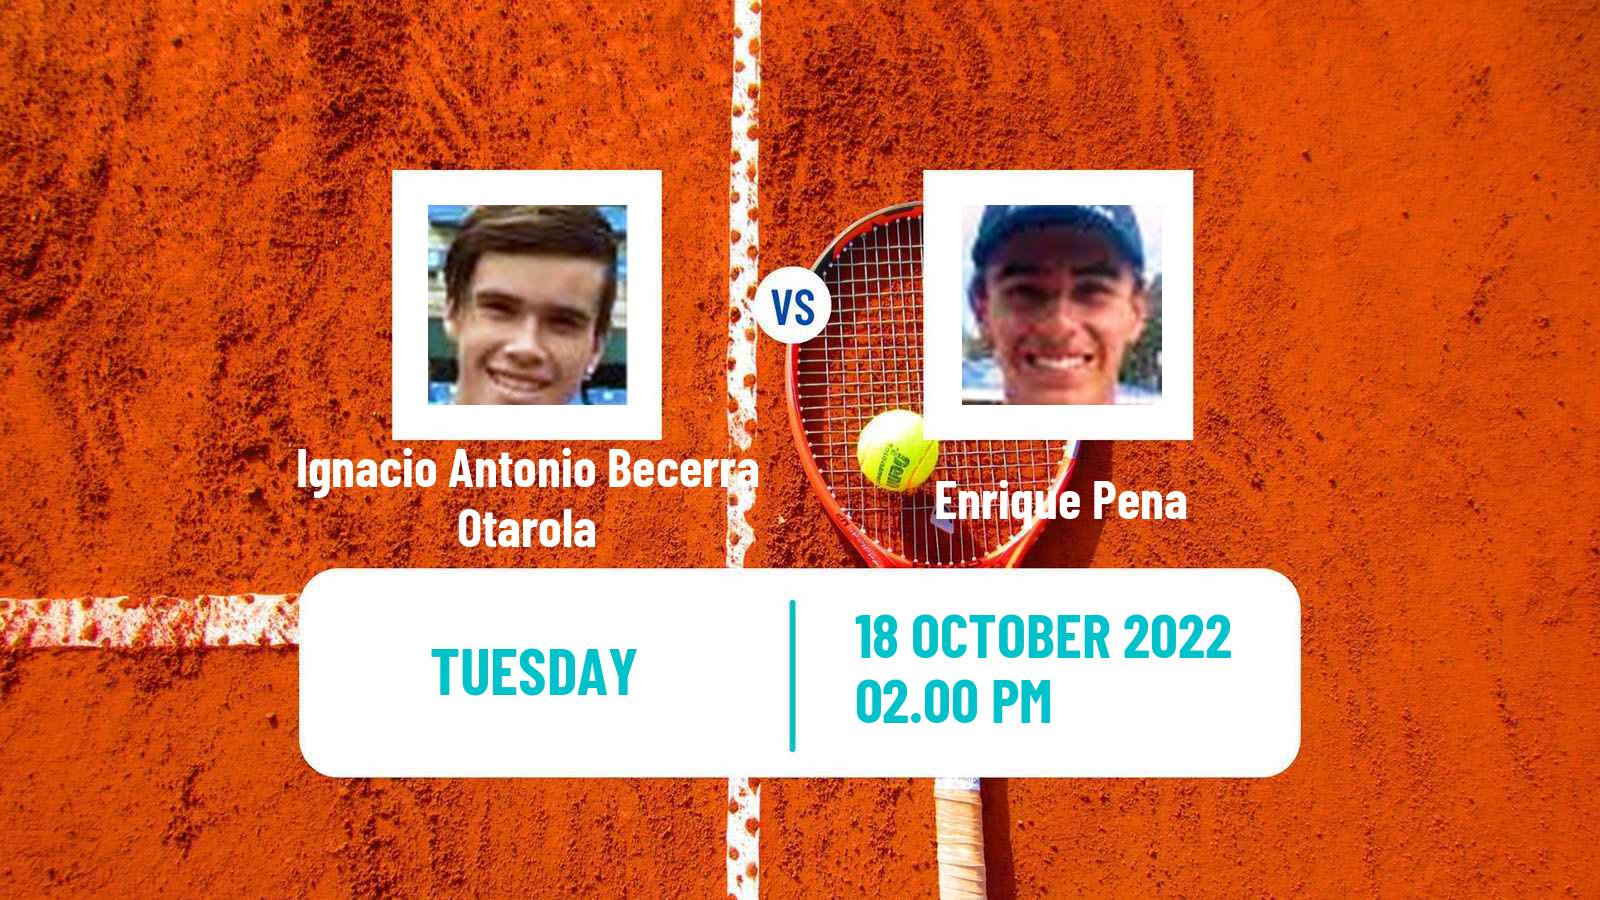 Tennis ITF Tournaments Ignacio Antonio Becerra Otarola - Enrique Pena